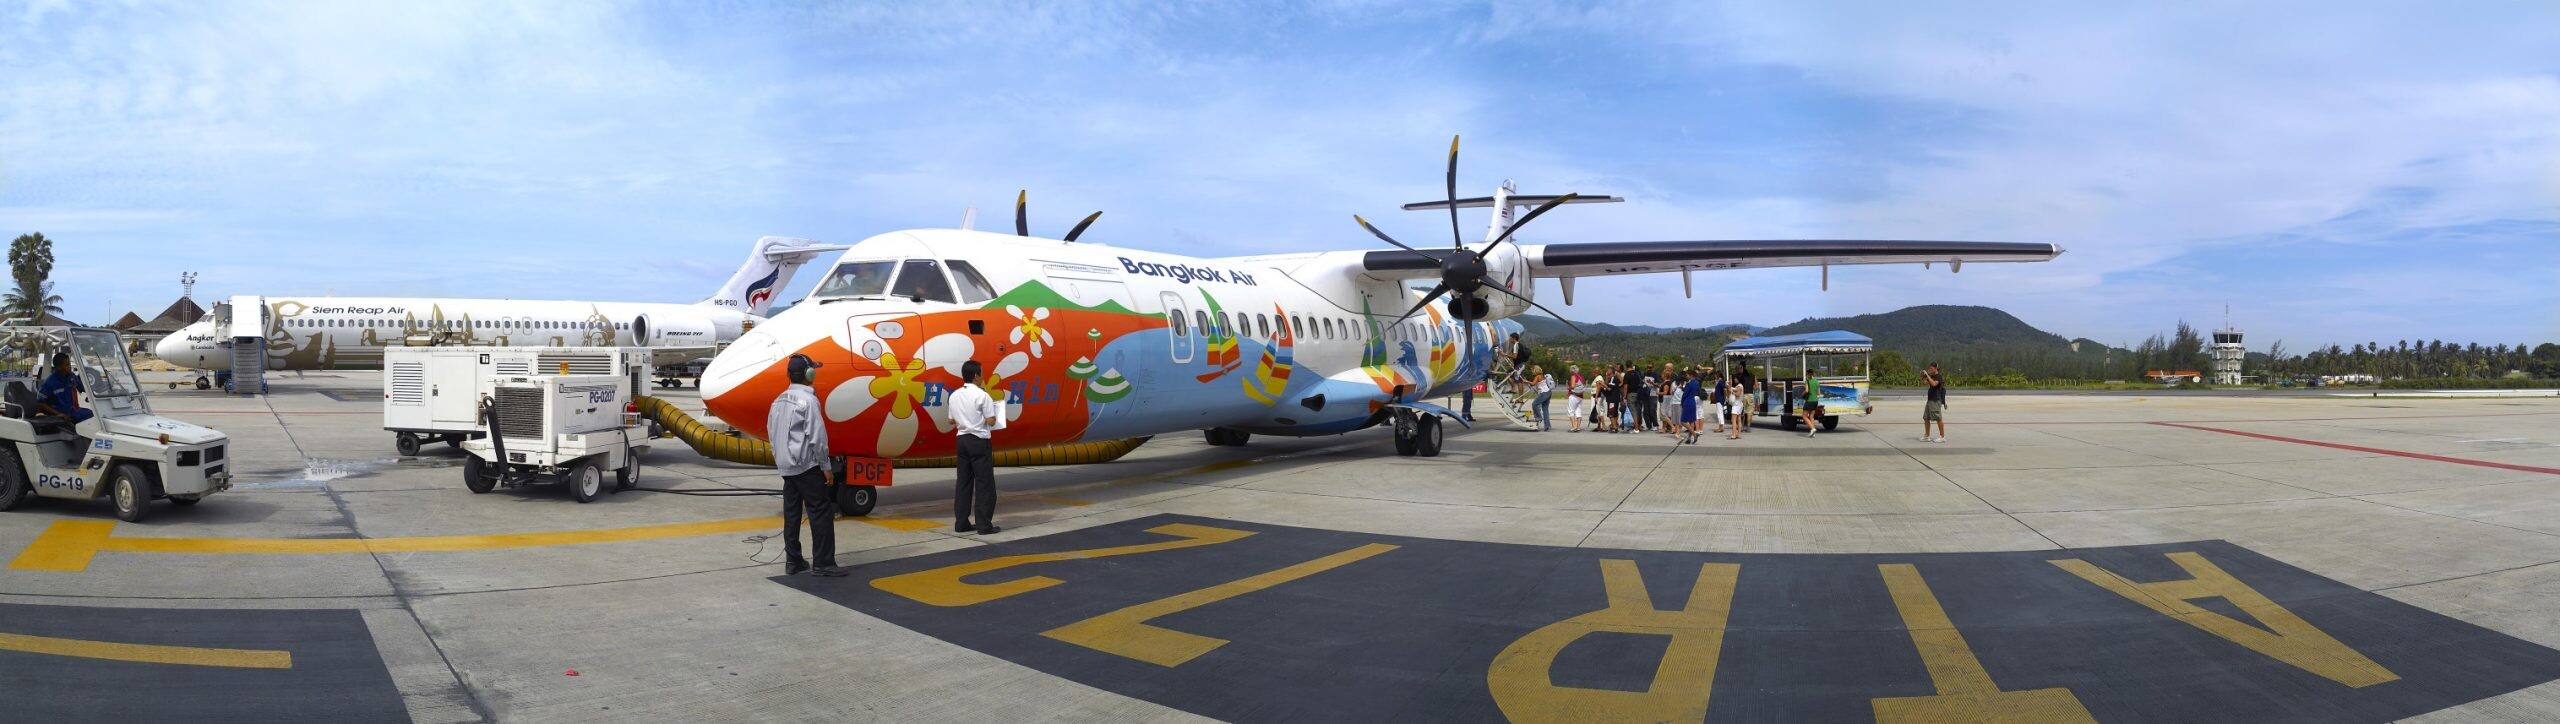 กองทรัสต์ "BAREIT" ชูจุดเด่นทรัพย์สินสนามบินสมุย  เติบโตไปพร้อมกับการฟื้นตัวของการท่องเที่ยวของประเทศไทย  เปิดจองซื้อหน่วยทรัสต์ 22-26 สิงหาคม นี้